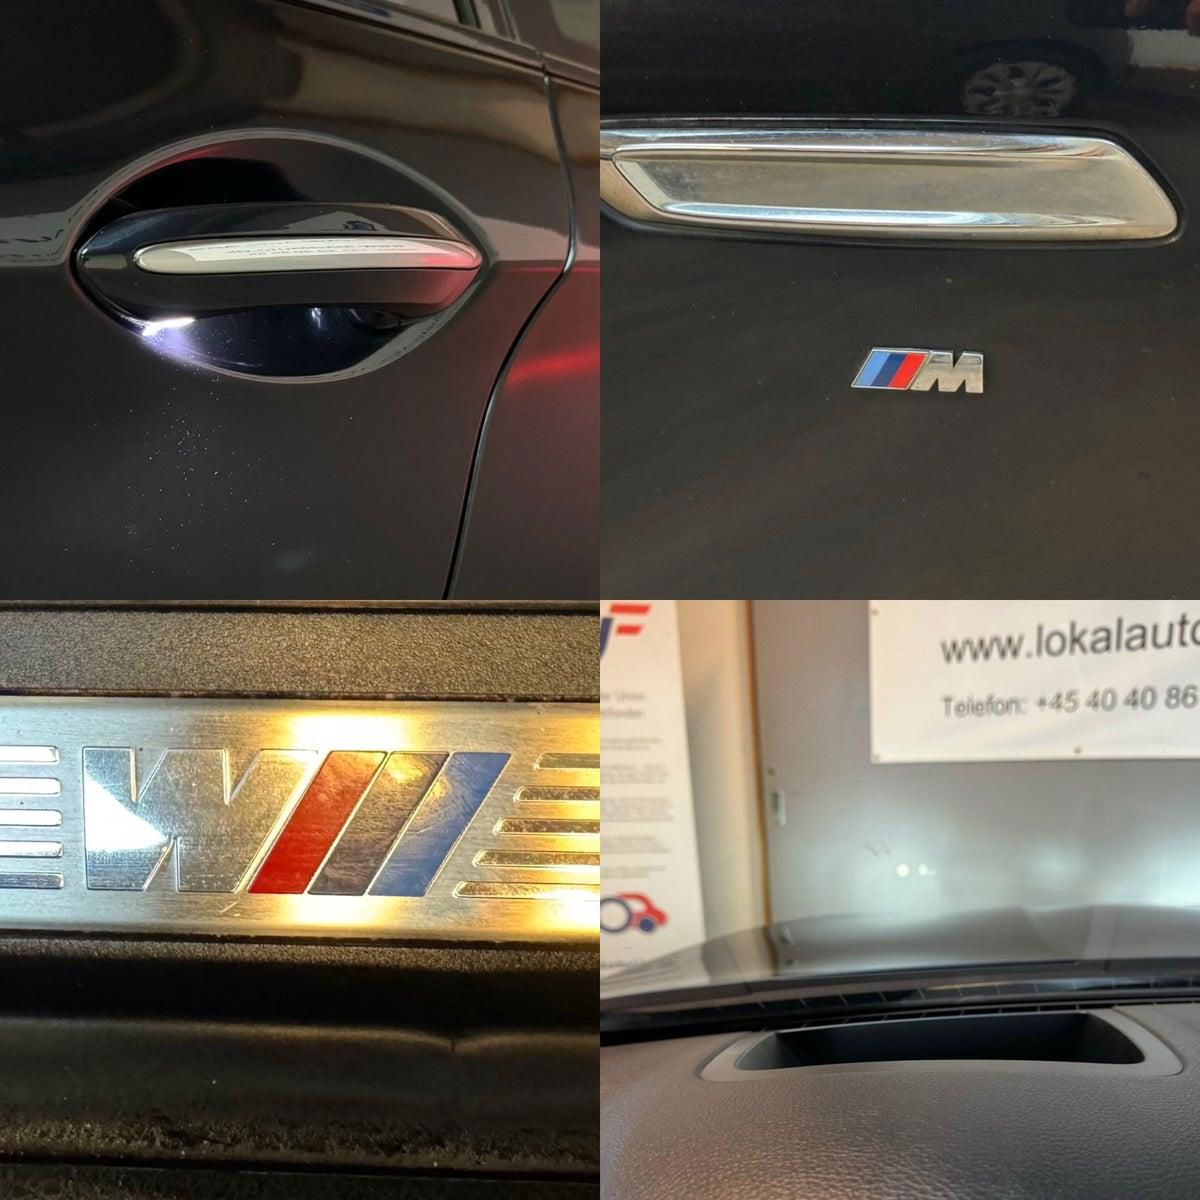 BMW 520d 2016